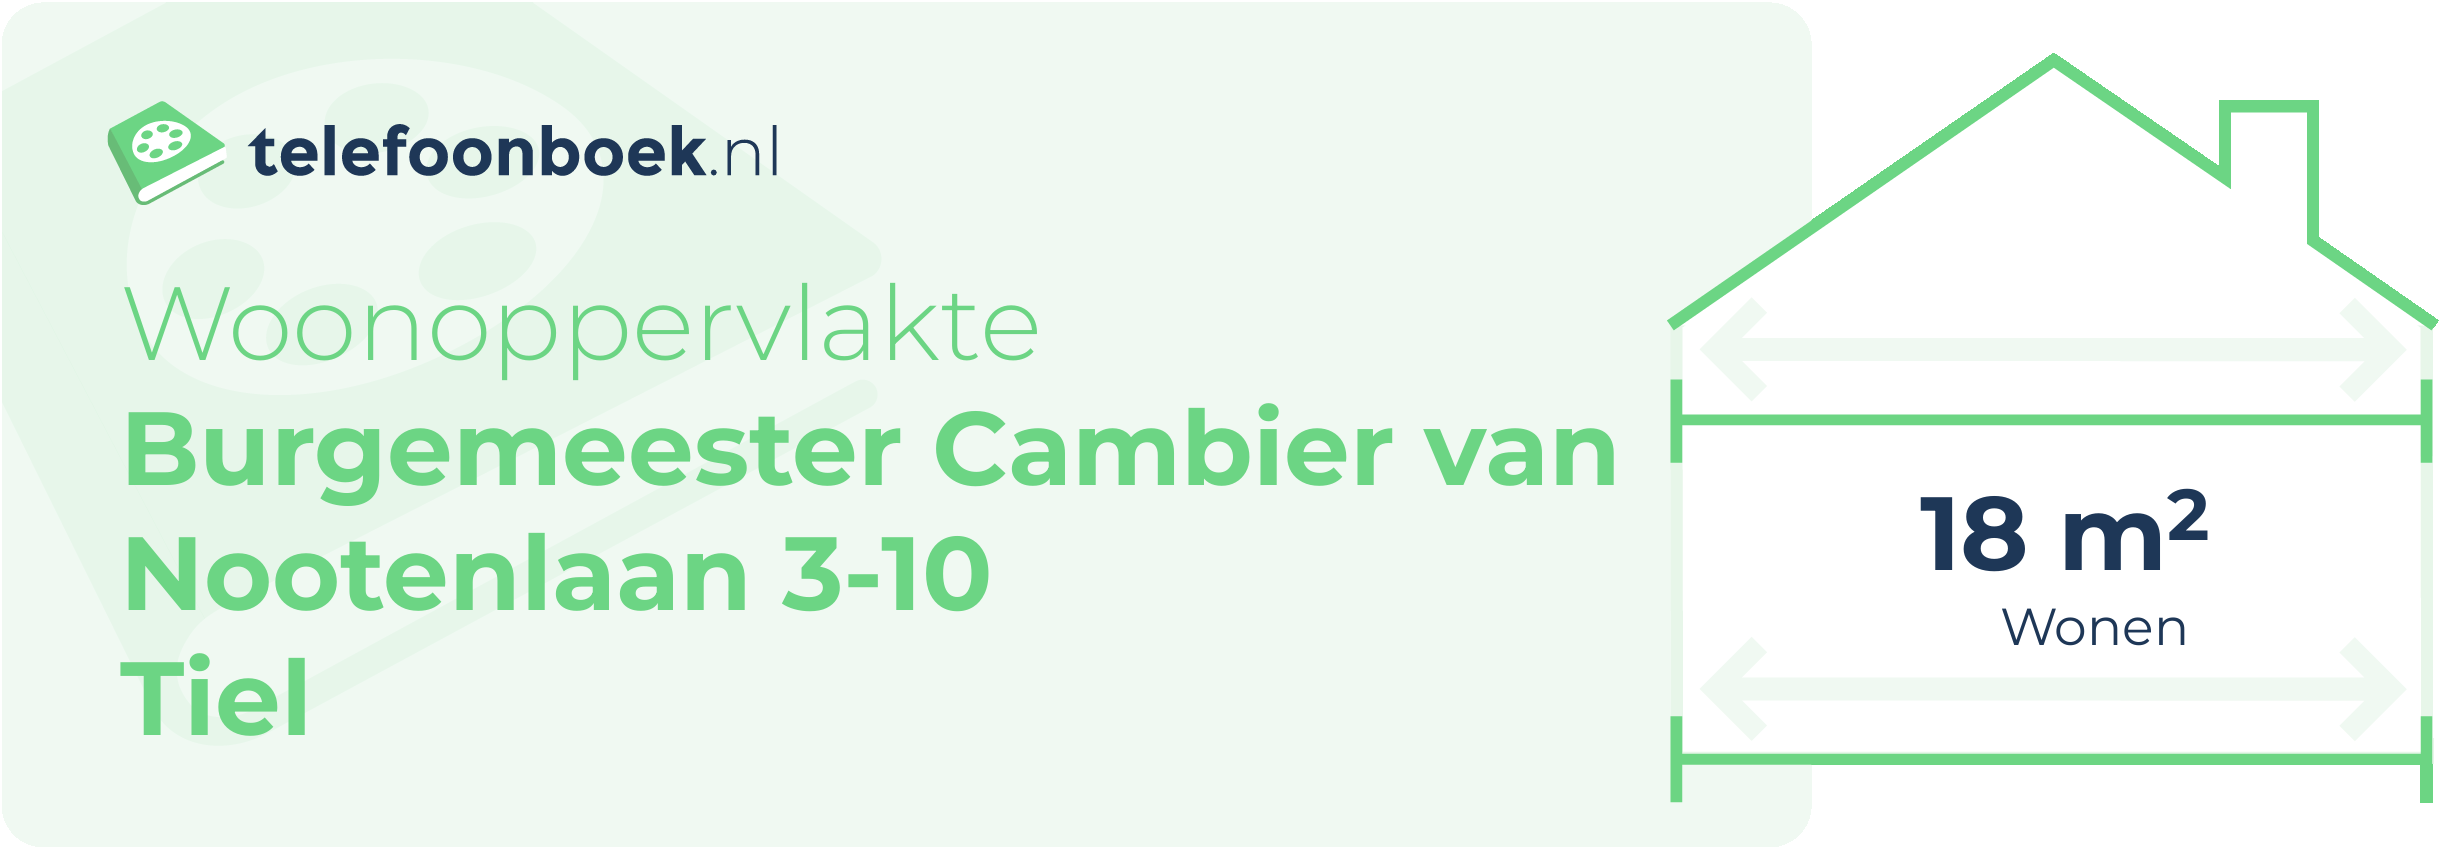 Woonoppervlakte Burgemeester Cambier Van Nootenlaan 3-10 Tiel